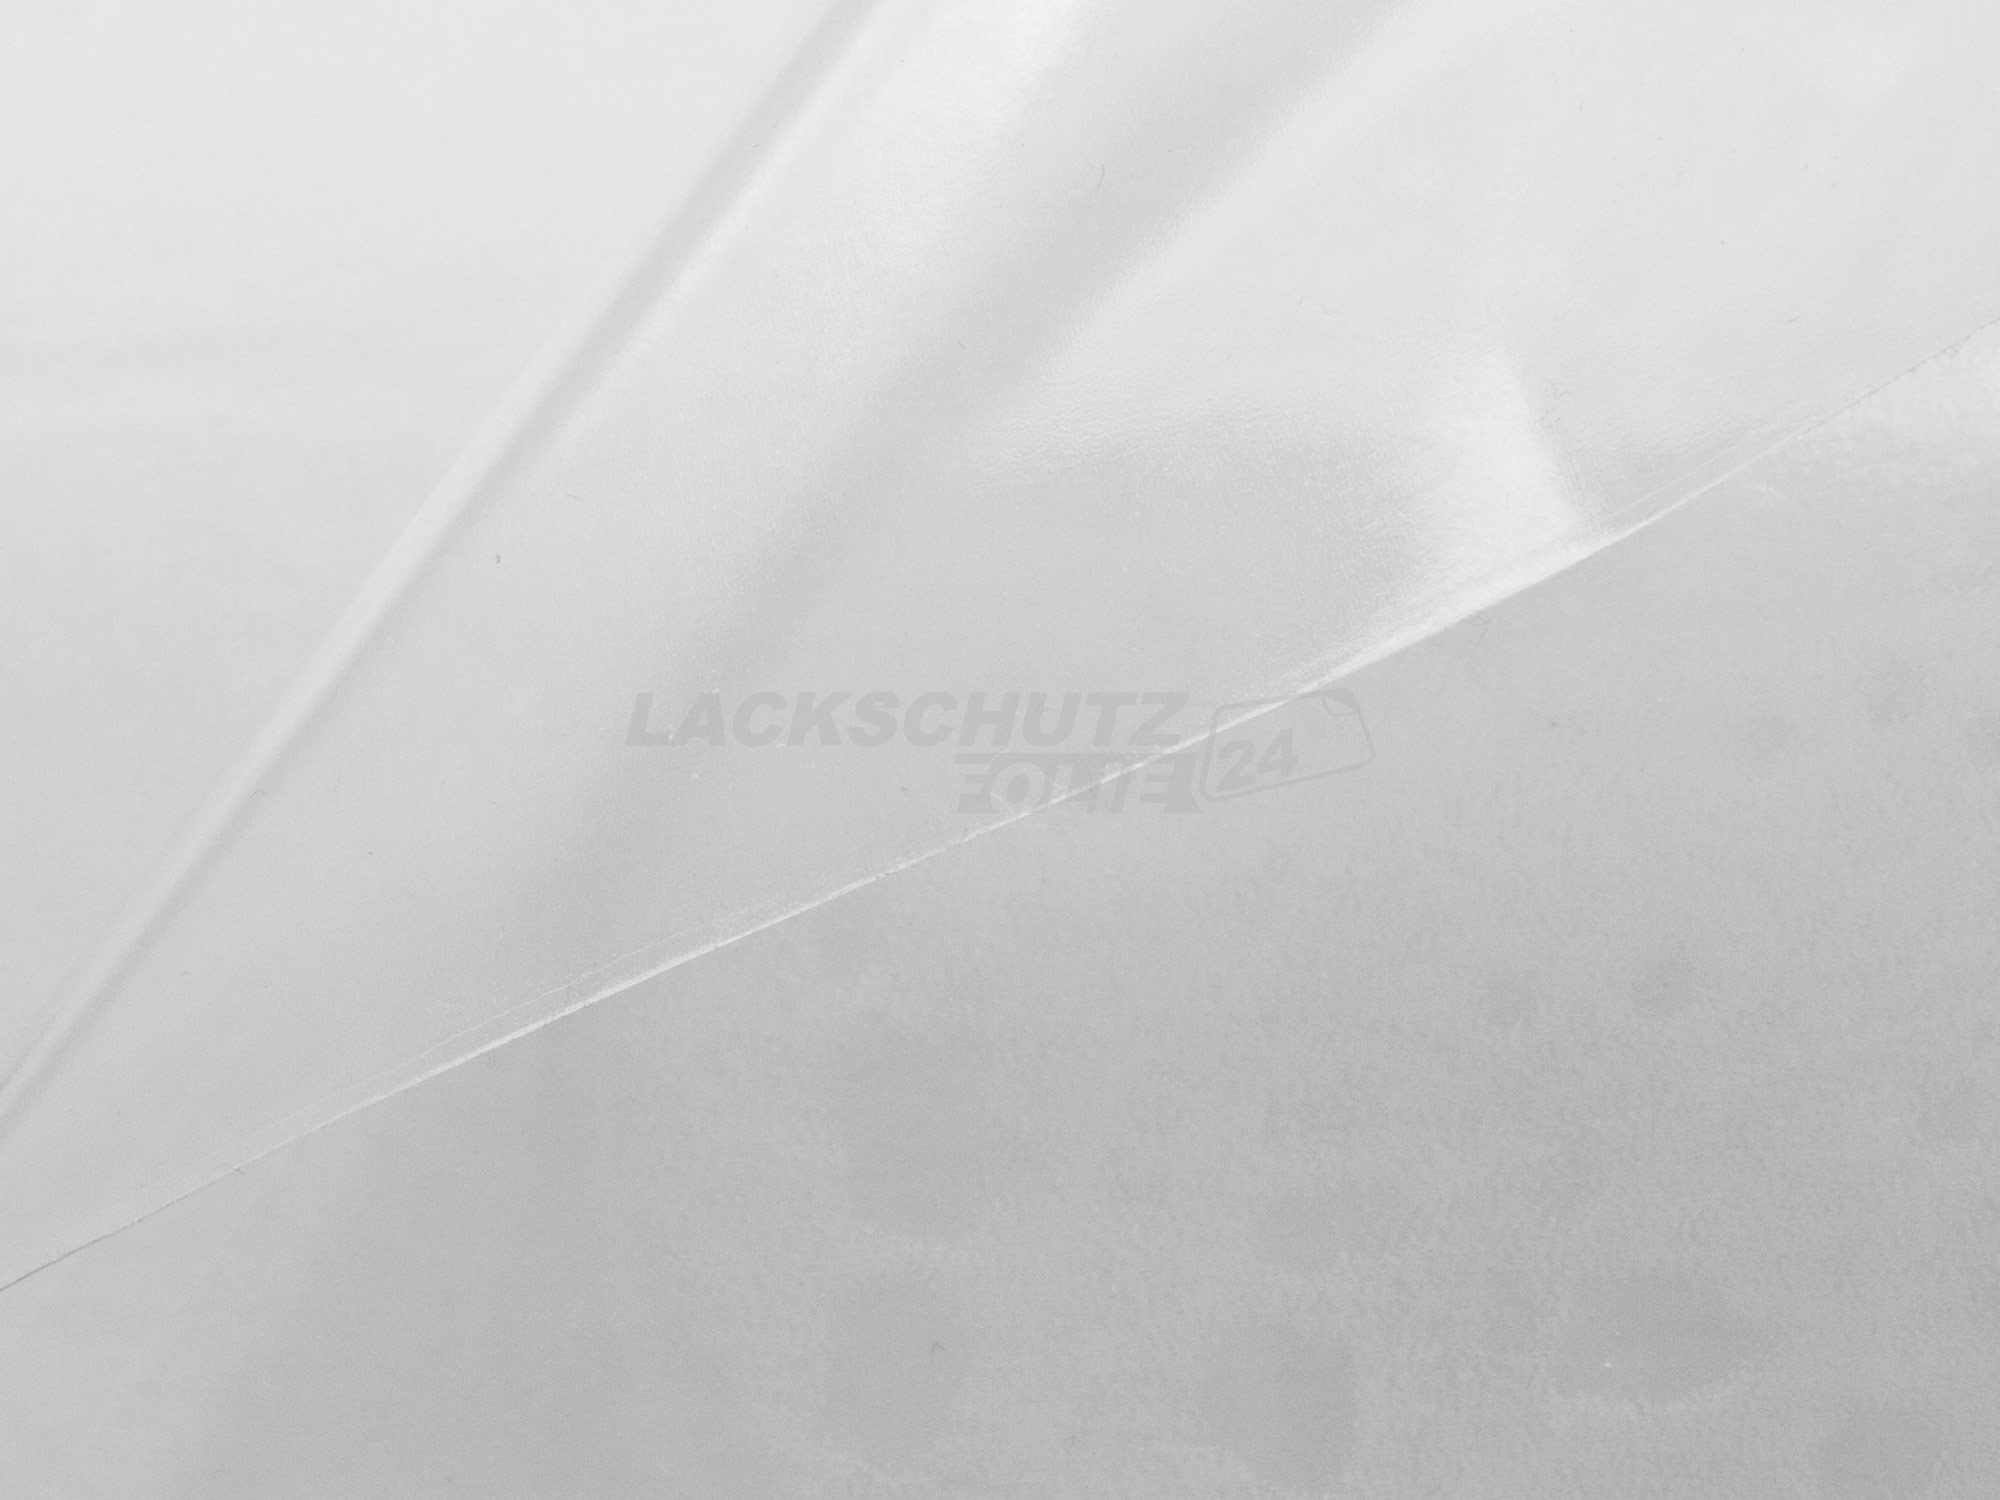 Ladekantenschutzfolie - Transparent Glatt Hochglänzend 150 µm stark für Audi A4 Limousine B6, Typ 8E, BJ 2000-2004